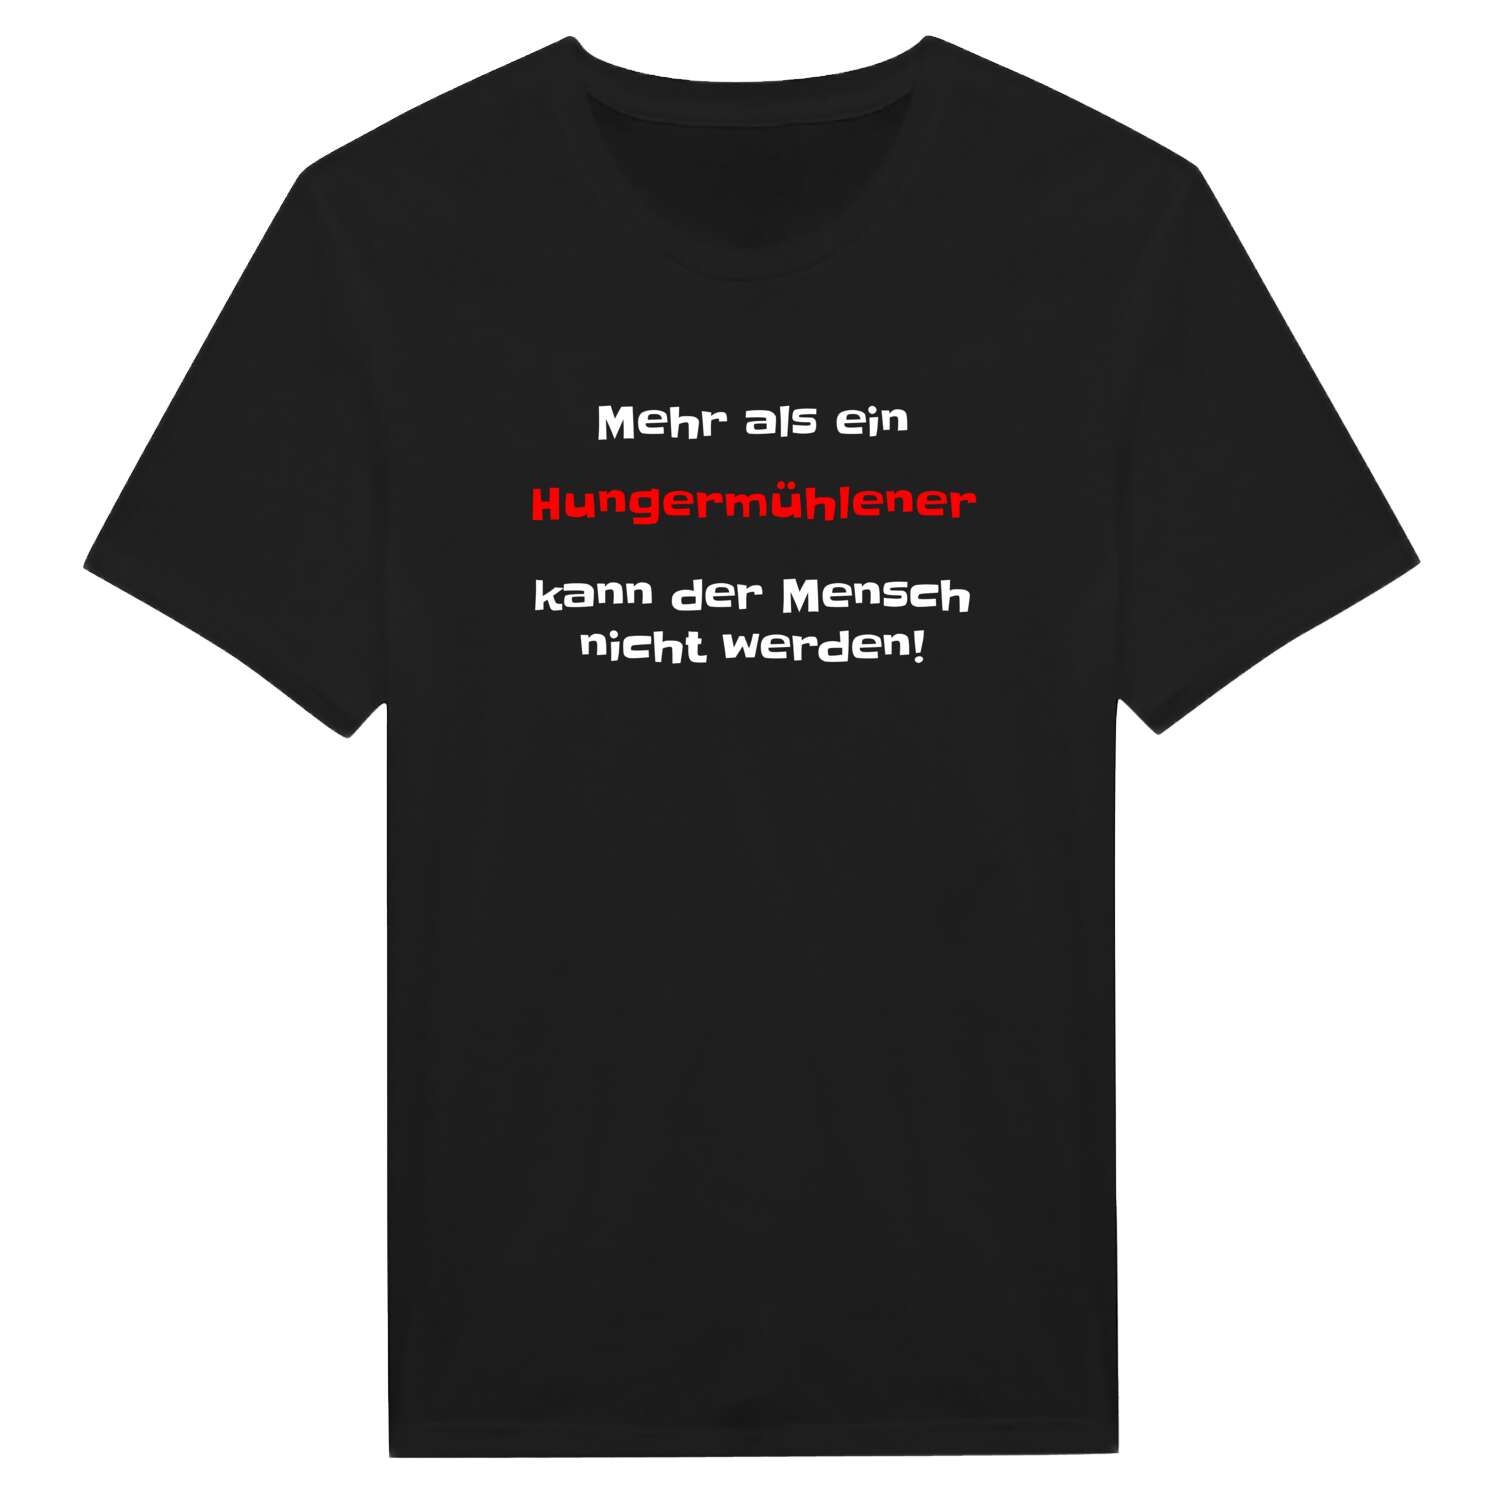 Hungermühle T-Shirt »Mehr als ein«